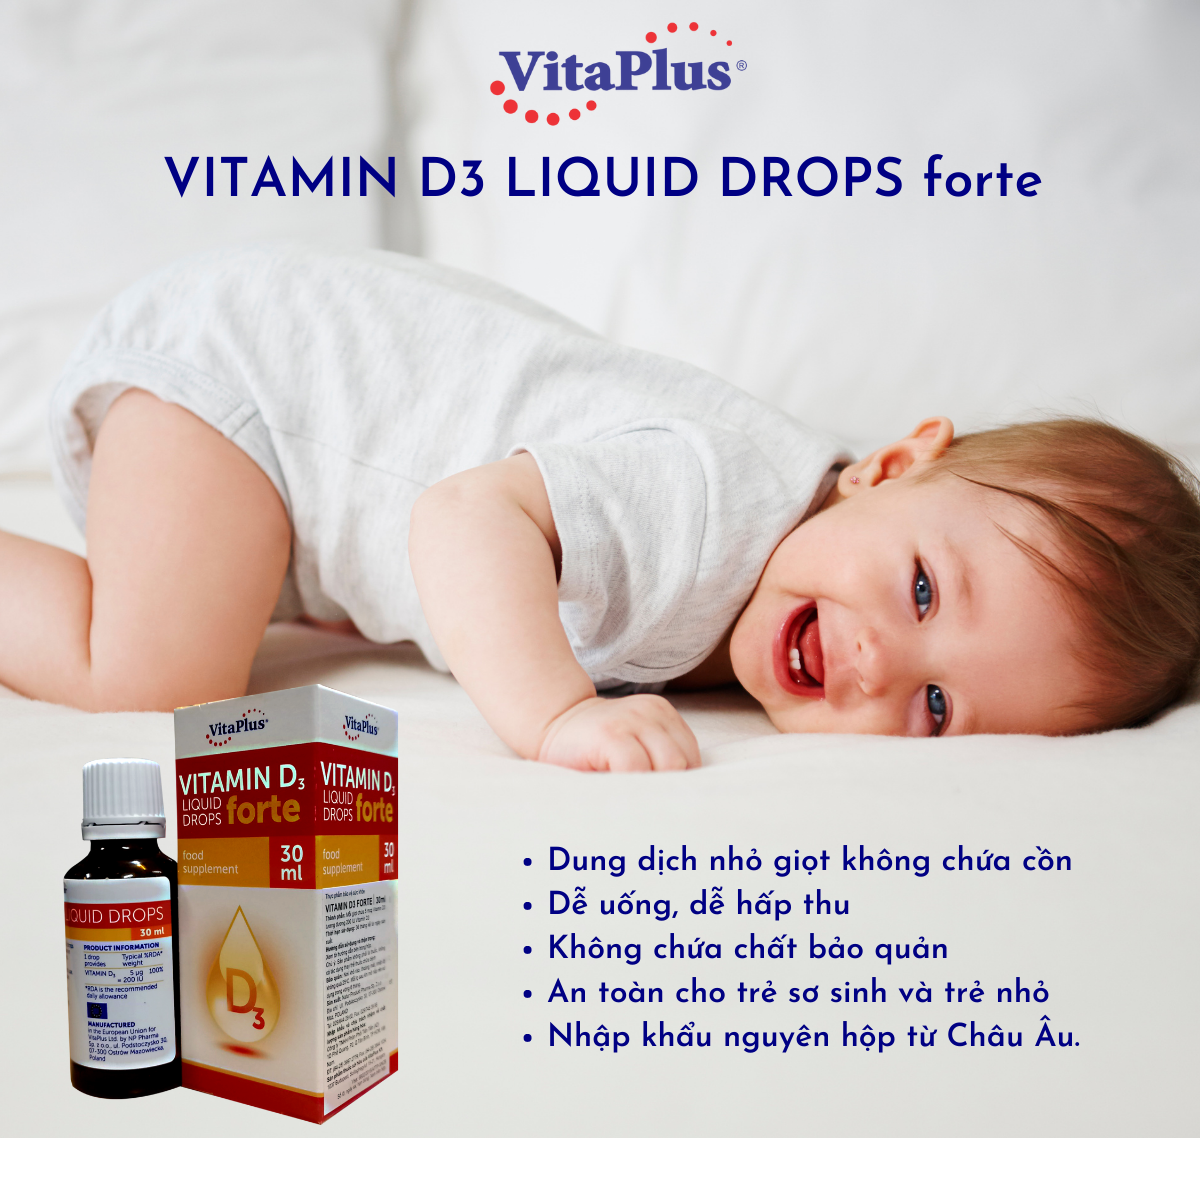 Thực phẩm bảo vệ sức khỏe: Vitaplus Vitamin D3 Forte liquid drops bổ sung vitamin D3 hỗ trợ tăng cường hấp thu canxi, giúp hỗ trợ phát triển hệ xương và răng